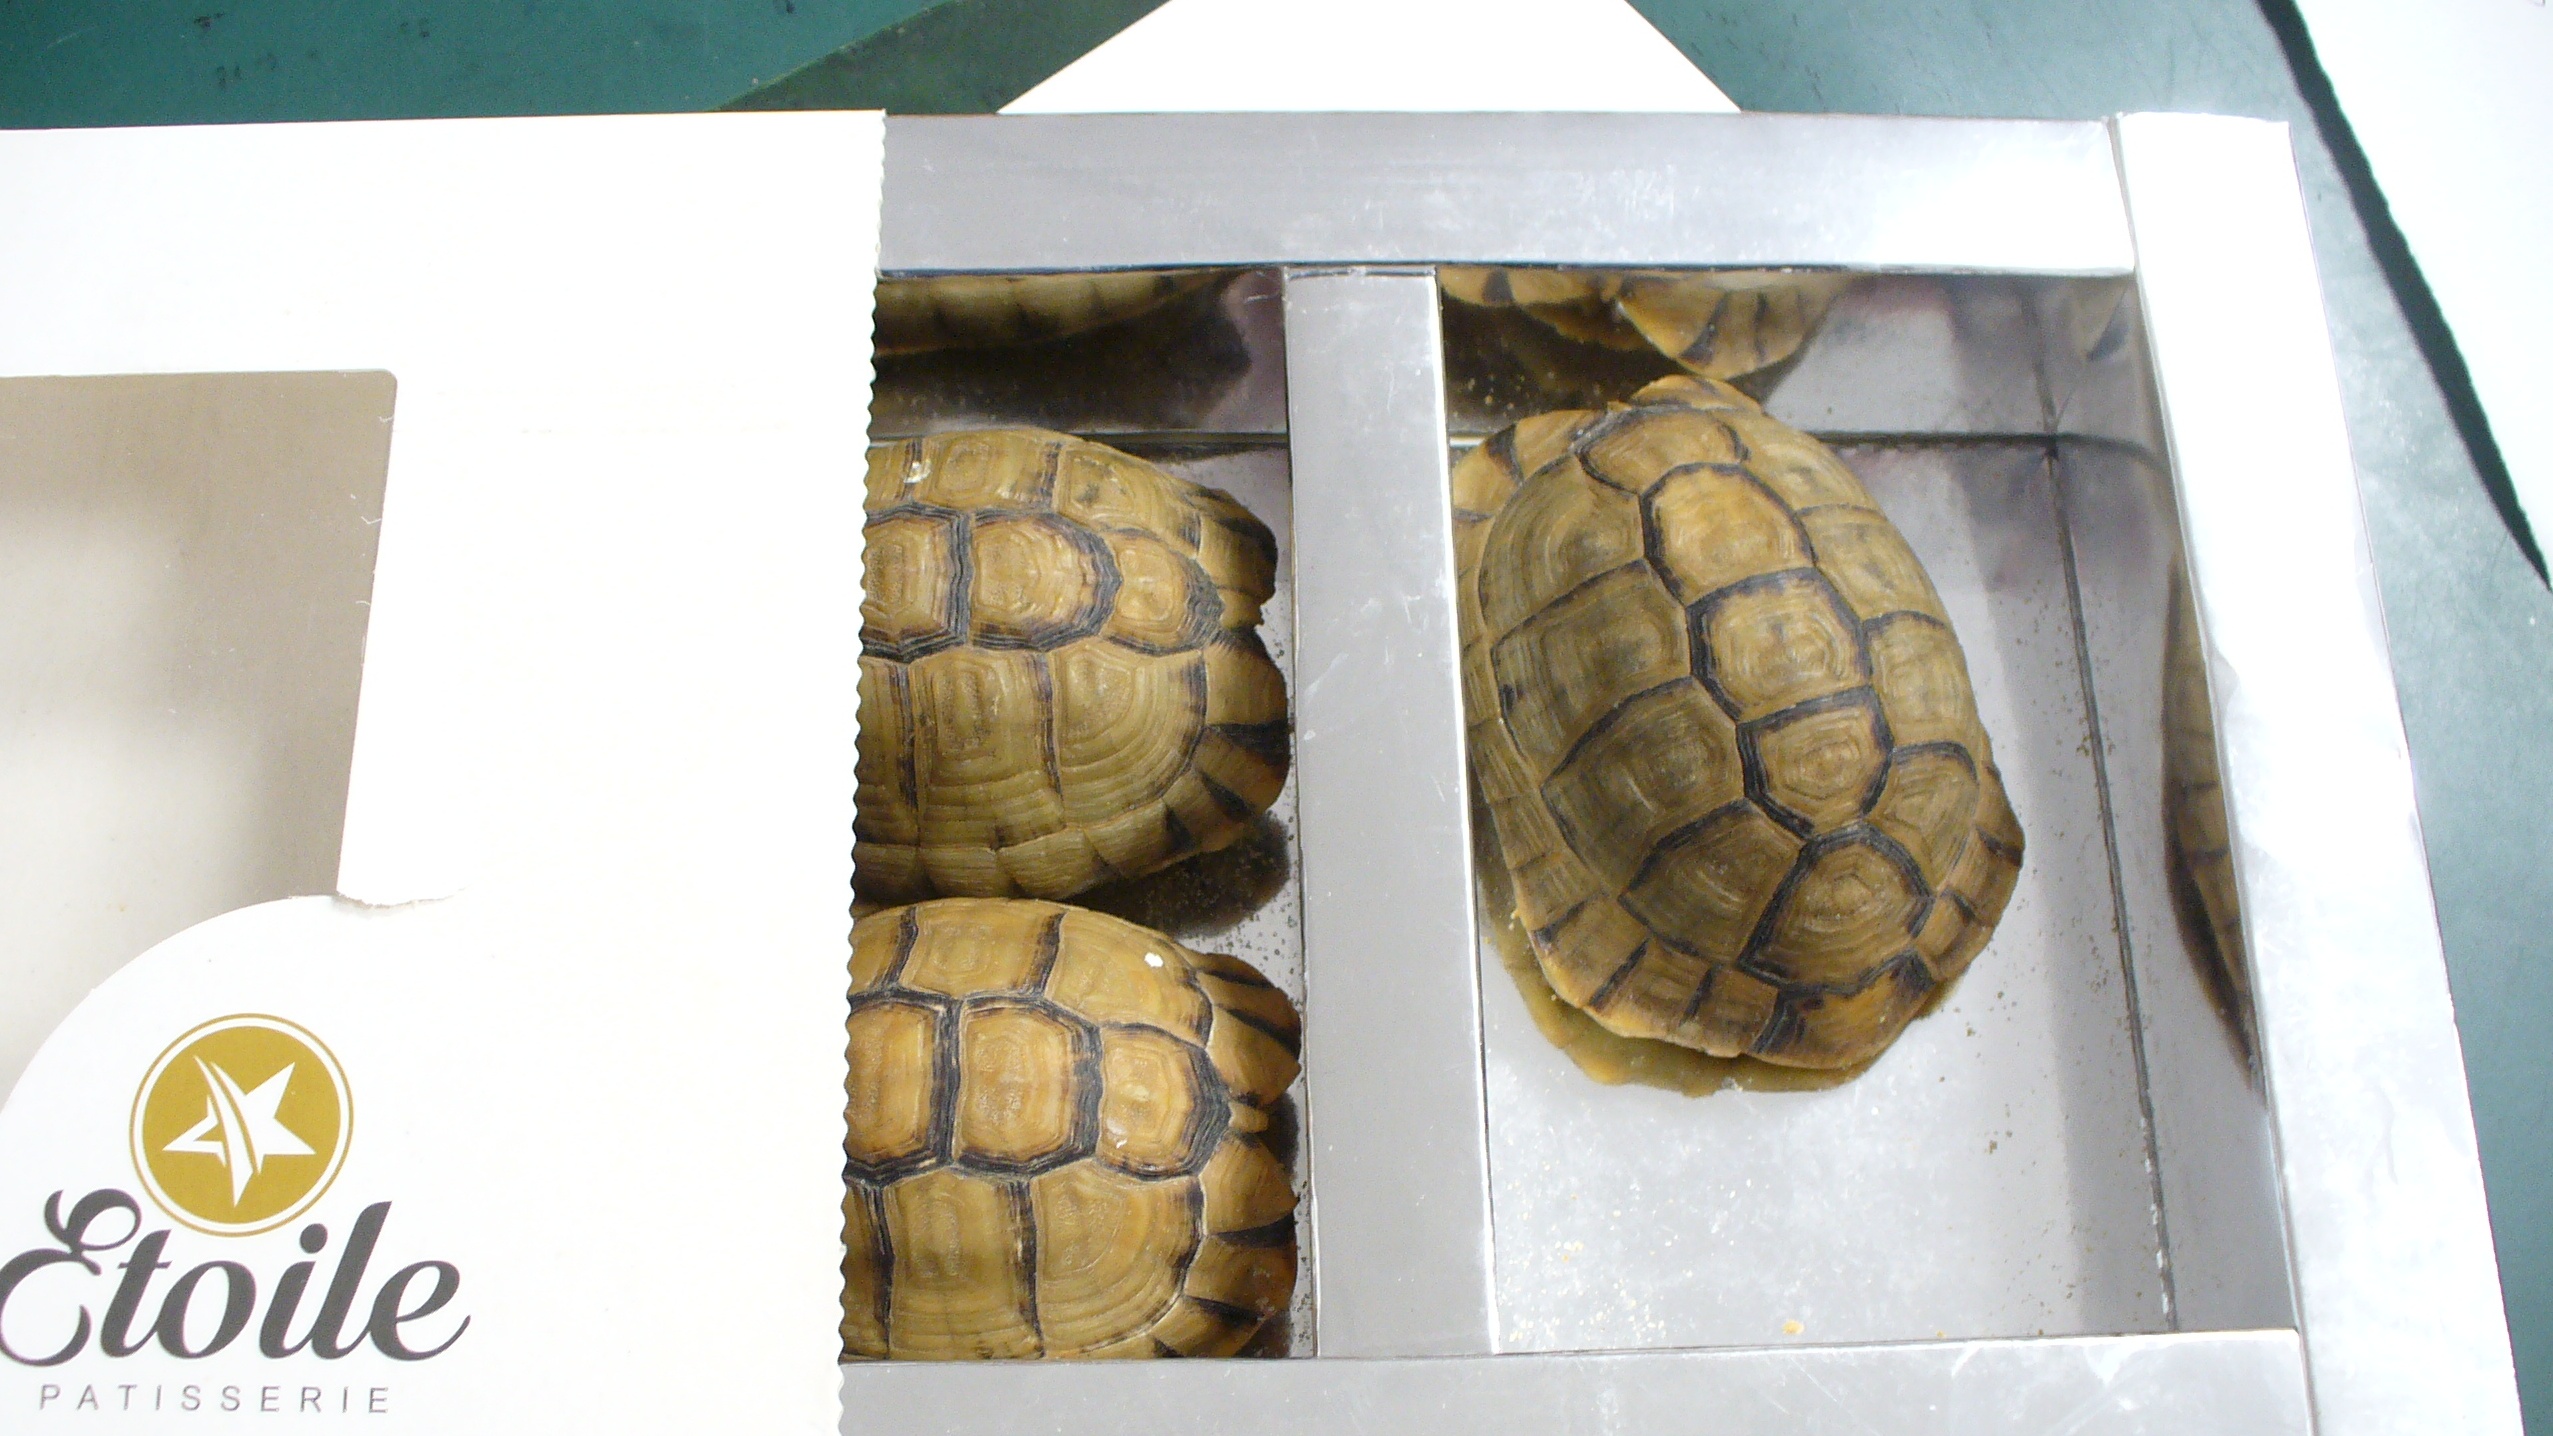 In Deutschland wurden in den letzten Jahren jedes Jahr bis zu 2000 Tiere beschlagnahmt, darunter lebende Schildkröten, Warane, Schlangen